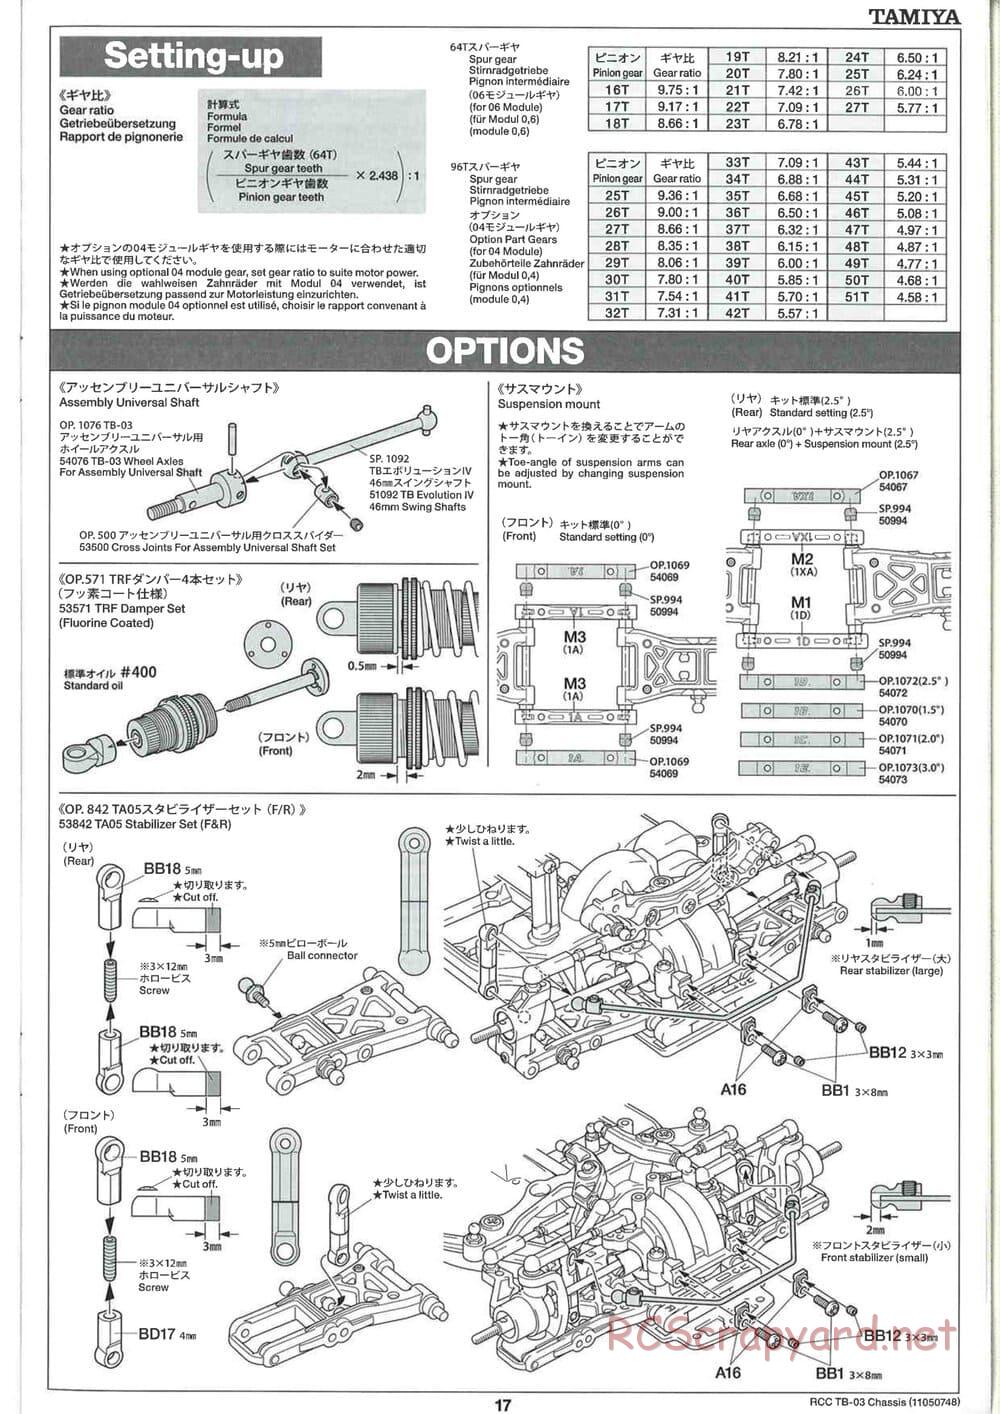 Tamiya - TB-03 Chassis - Manual - Page 17